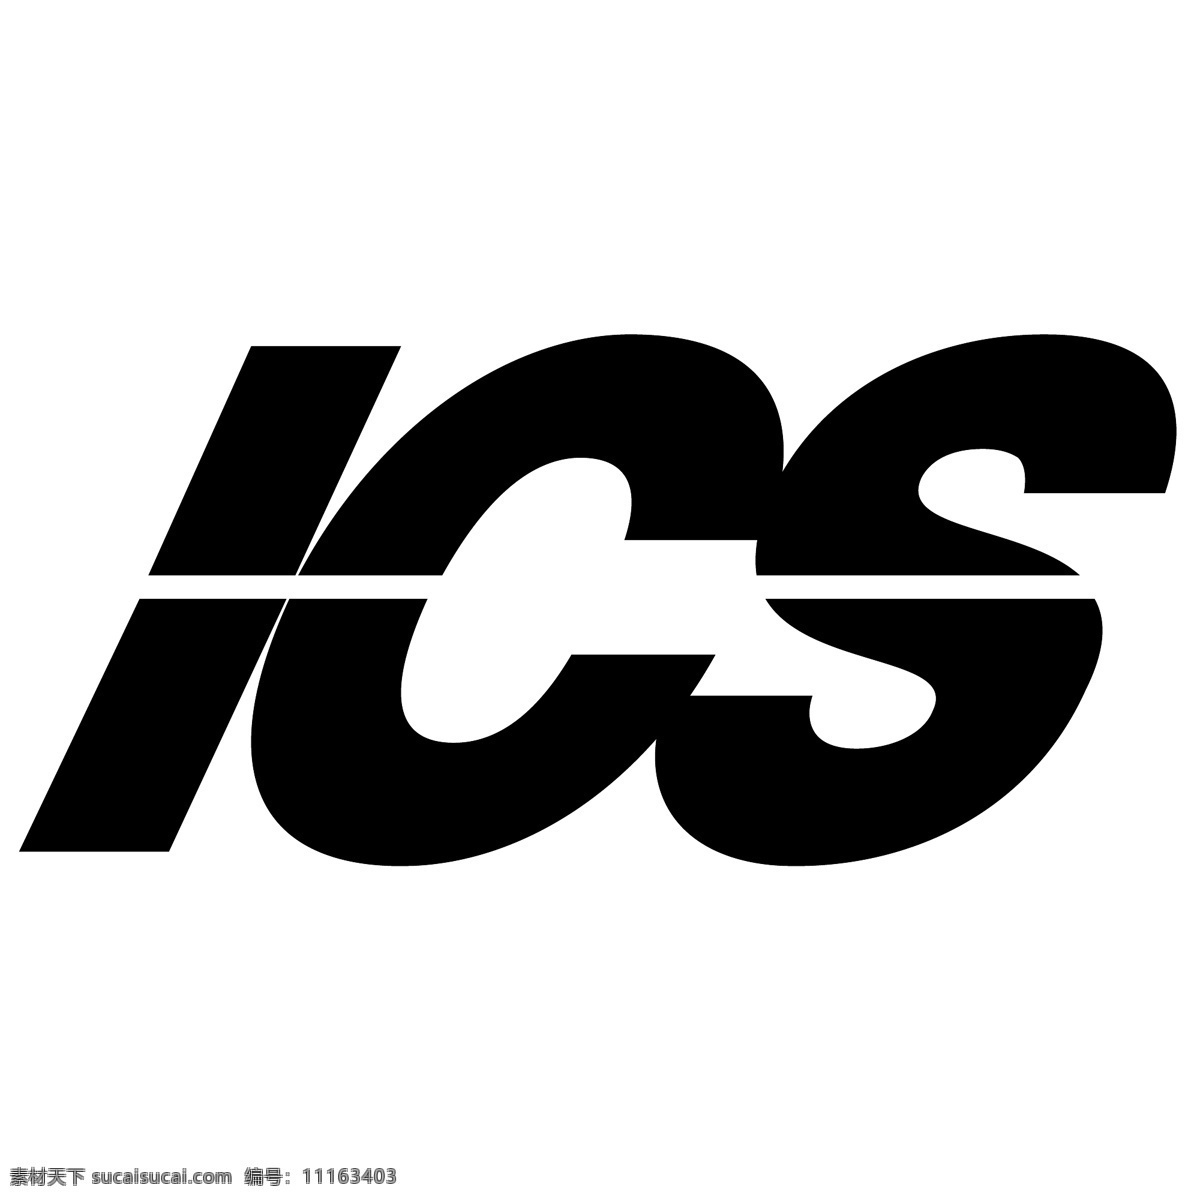 集成 学习系统 免费 ic 标志 ics psd源文件 logo设计